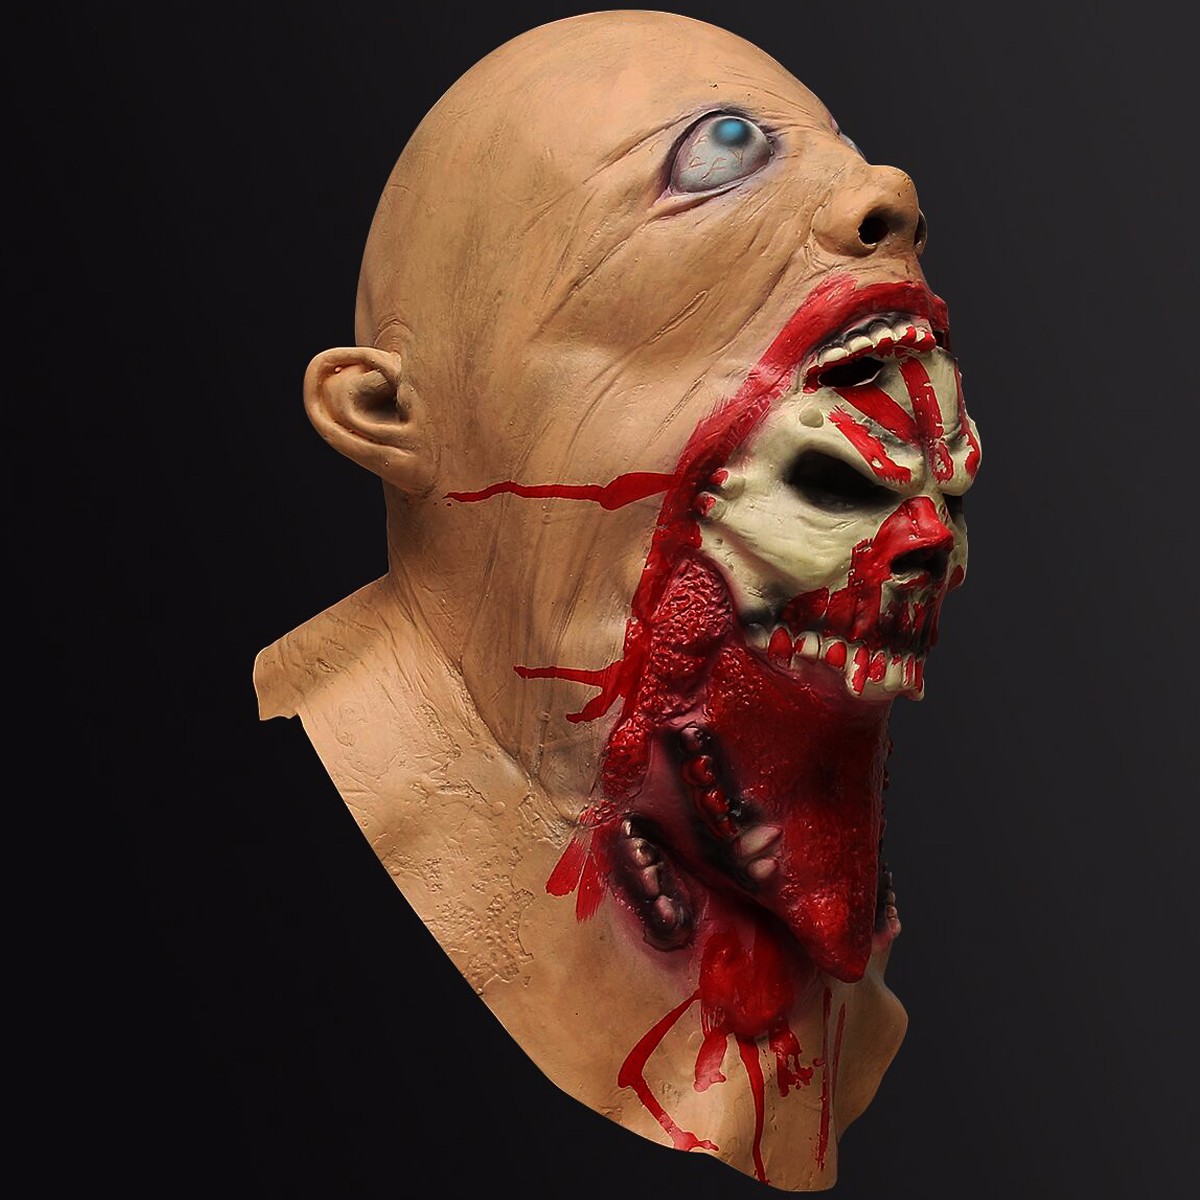 

Хэллоуин латексная маска кровавый зомби костюм лицо плавление партия проп